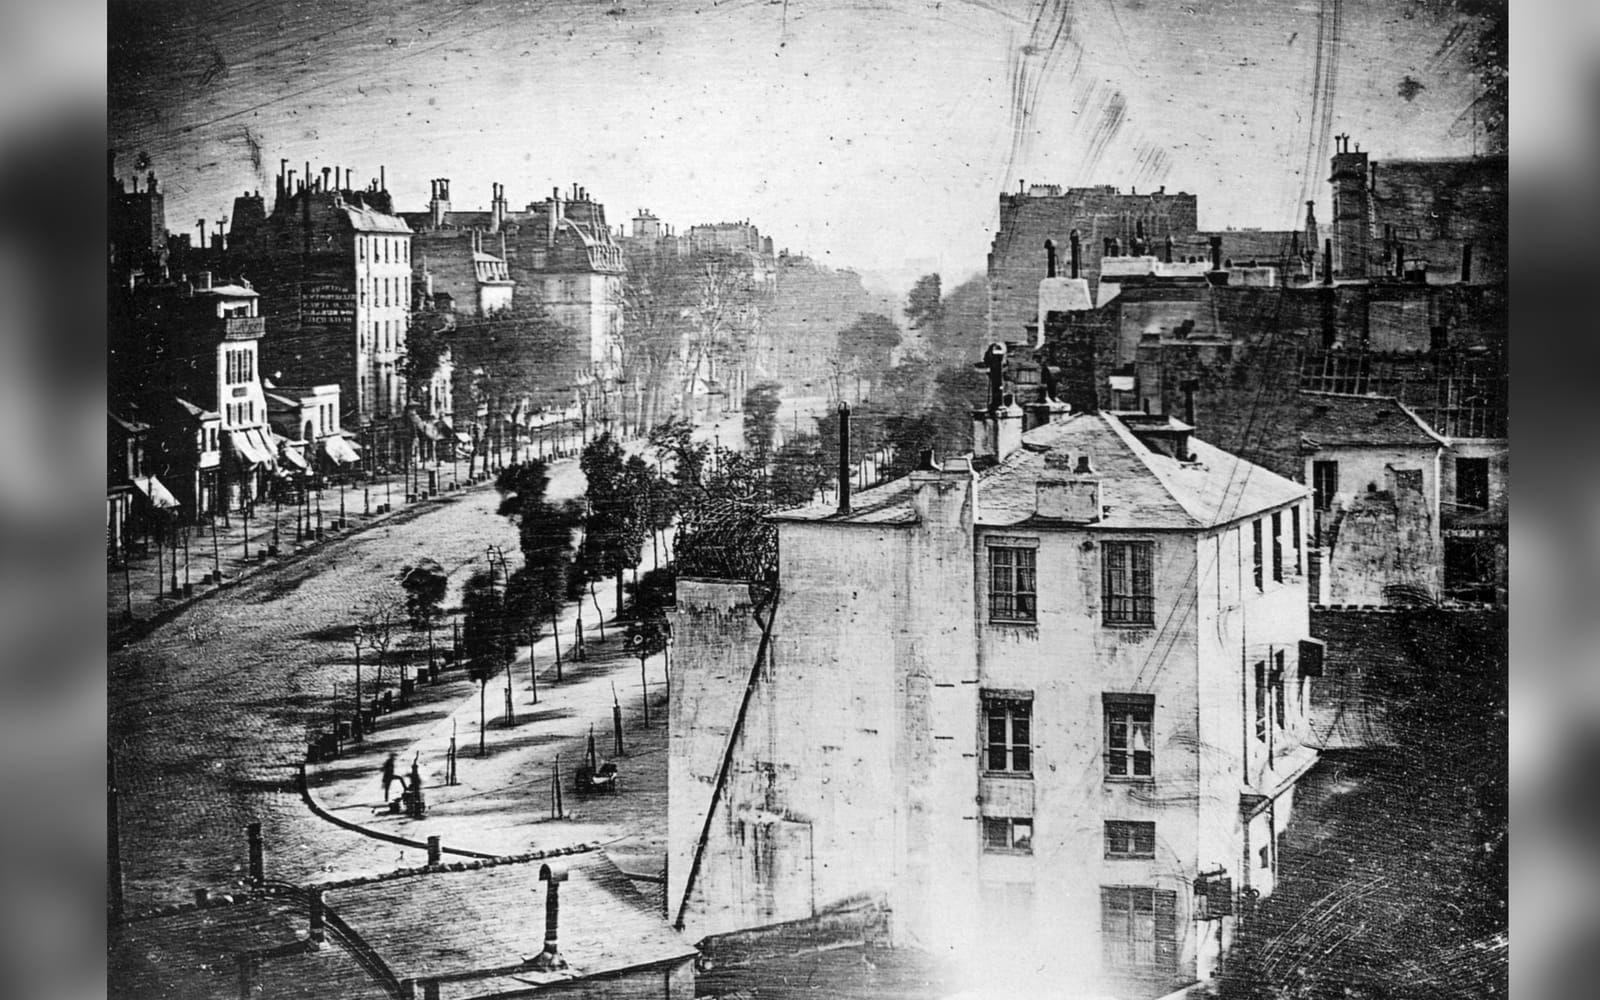 <strong>VÄRLDENS ÄLDSTA FOTO AV EN PERSON.</strong> Louis Daguerre tog världens första fotografi av en person år 1838. Bilden visar en gatan Boulevard du Temple i Paris men eftersom det krävdes flera minuters exponering fastnade bara en person på foto.